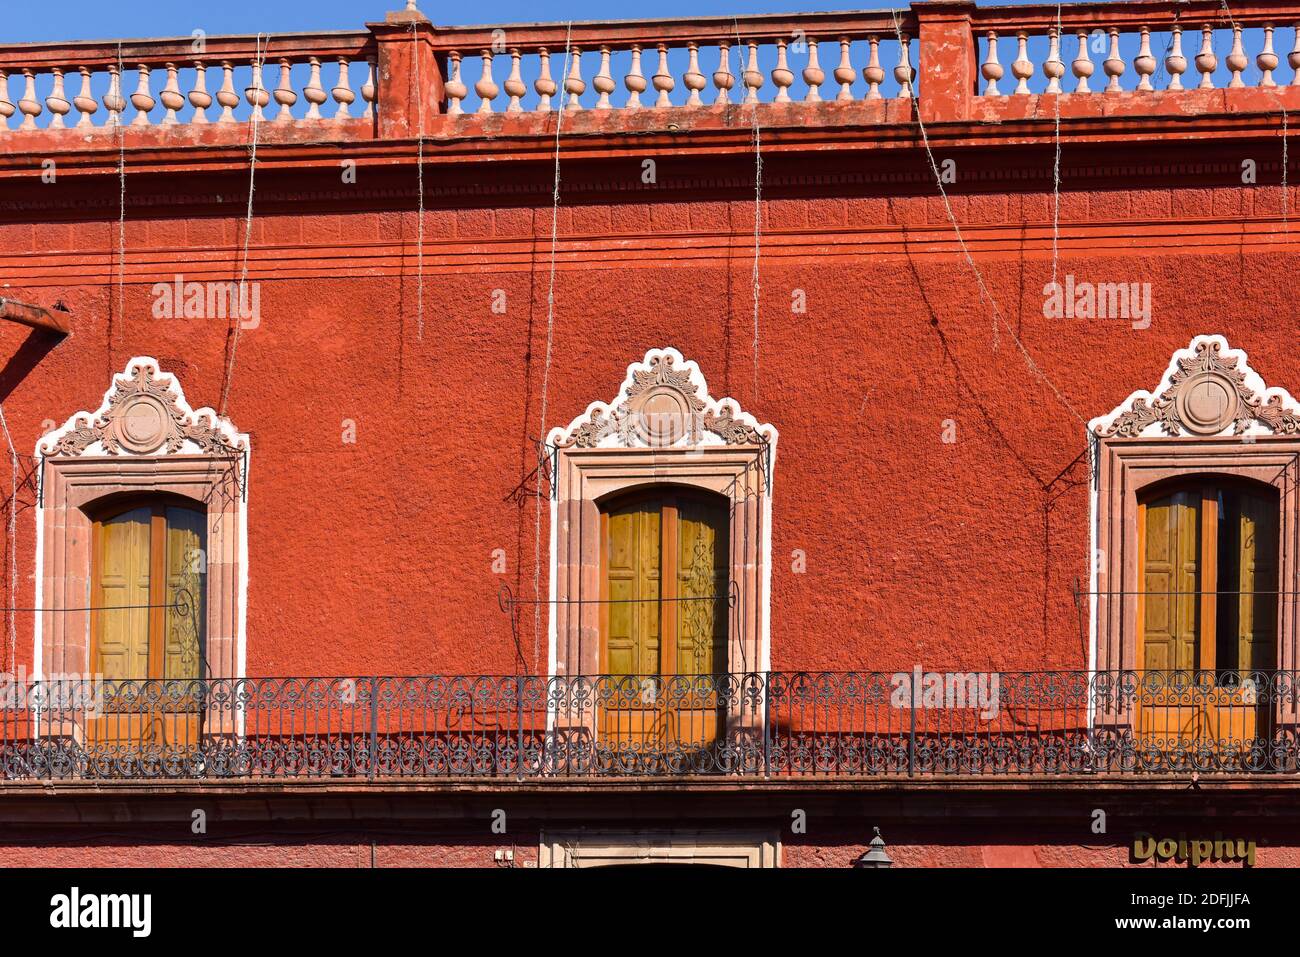 Détails du bâtiment colonial sur la place principale dans le centre historique de la ville coloniale de San Miguel de Allende, Guanajuato, Mexique Banque D'Images